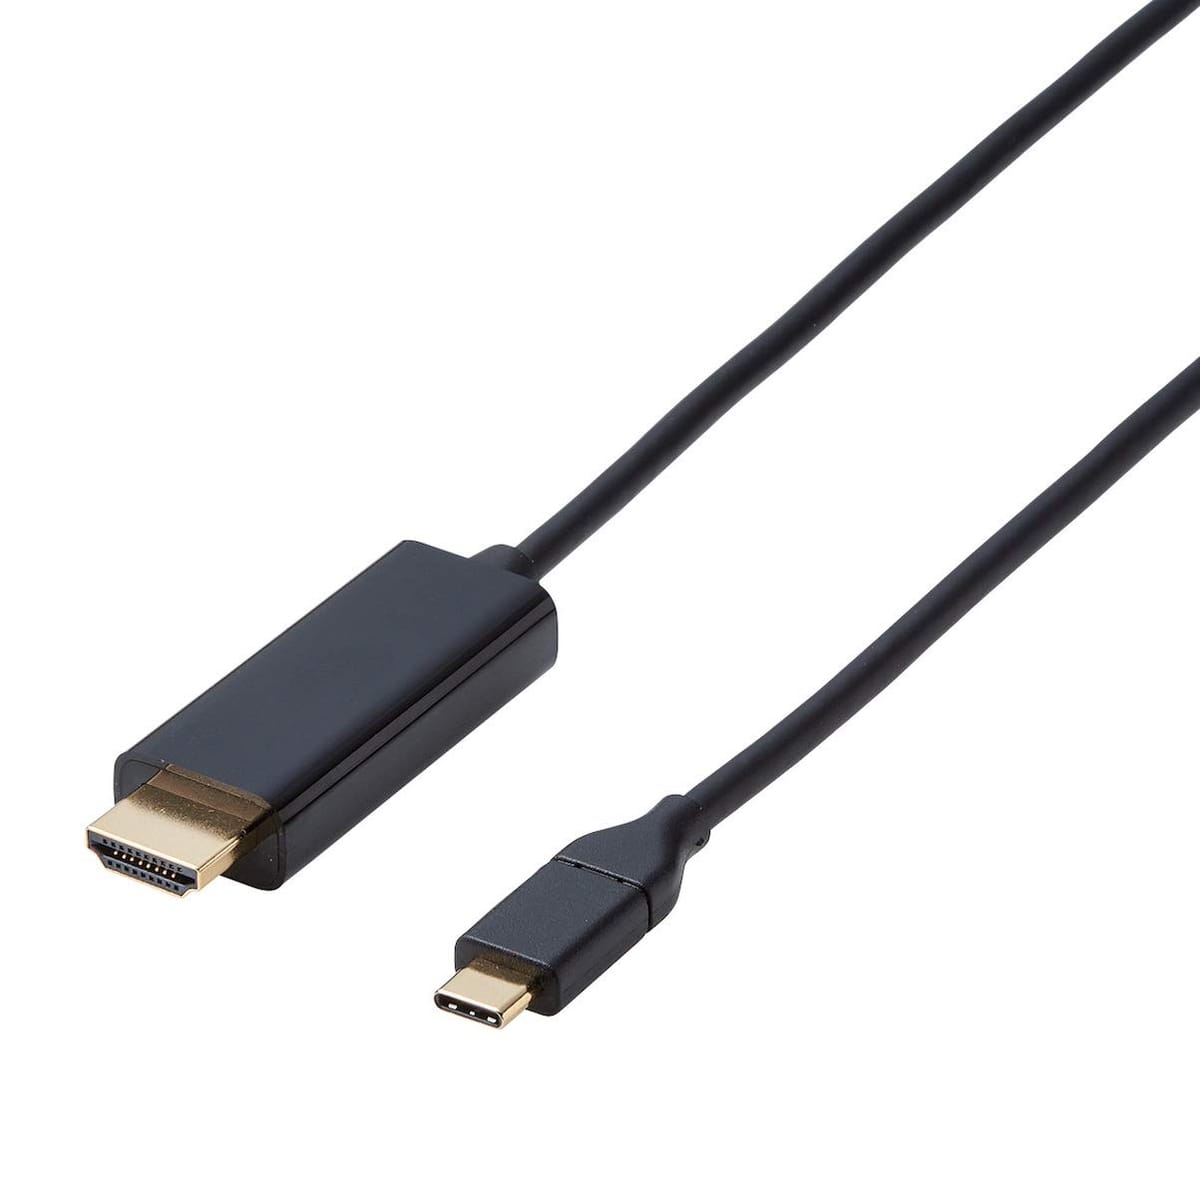 エレコム USB-C HDMI 変換 ケーブル 1.0m (USB C to HDMI) ブラック CAC-CHDMI10BK